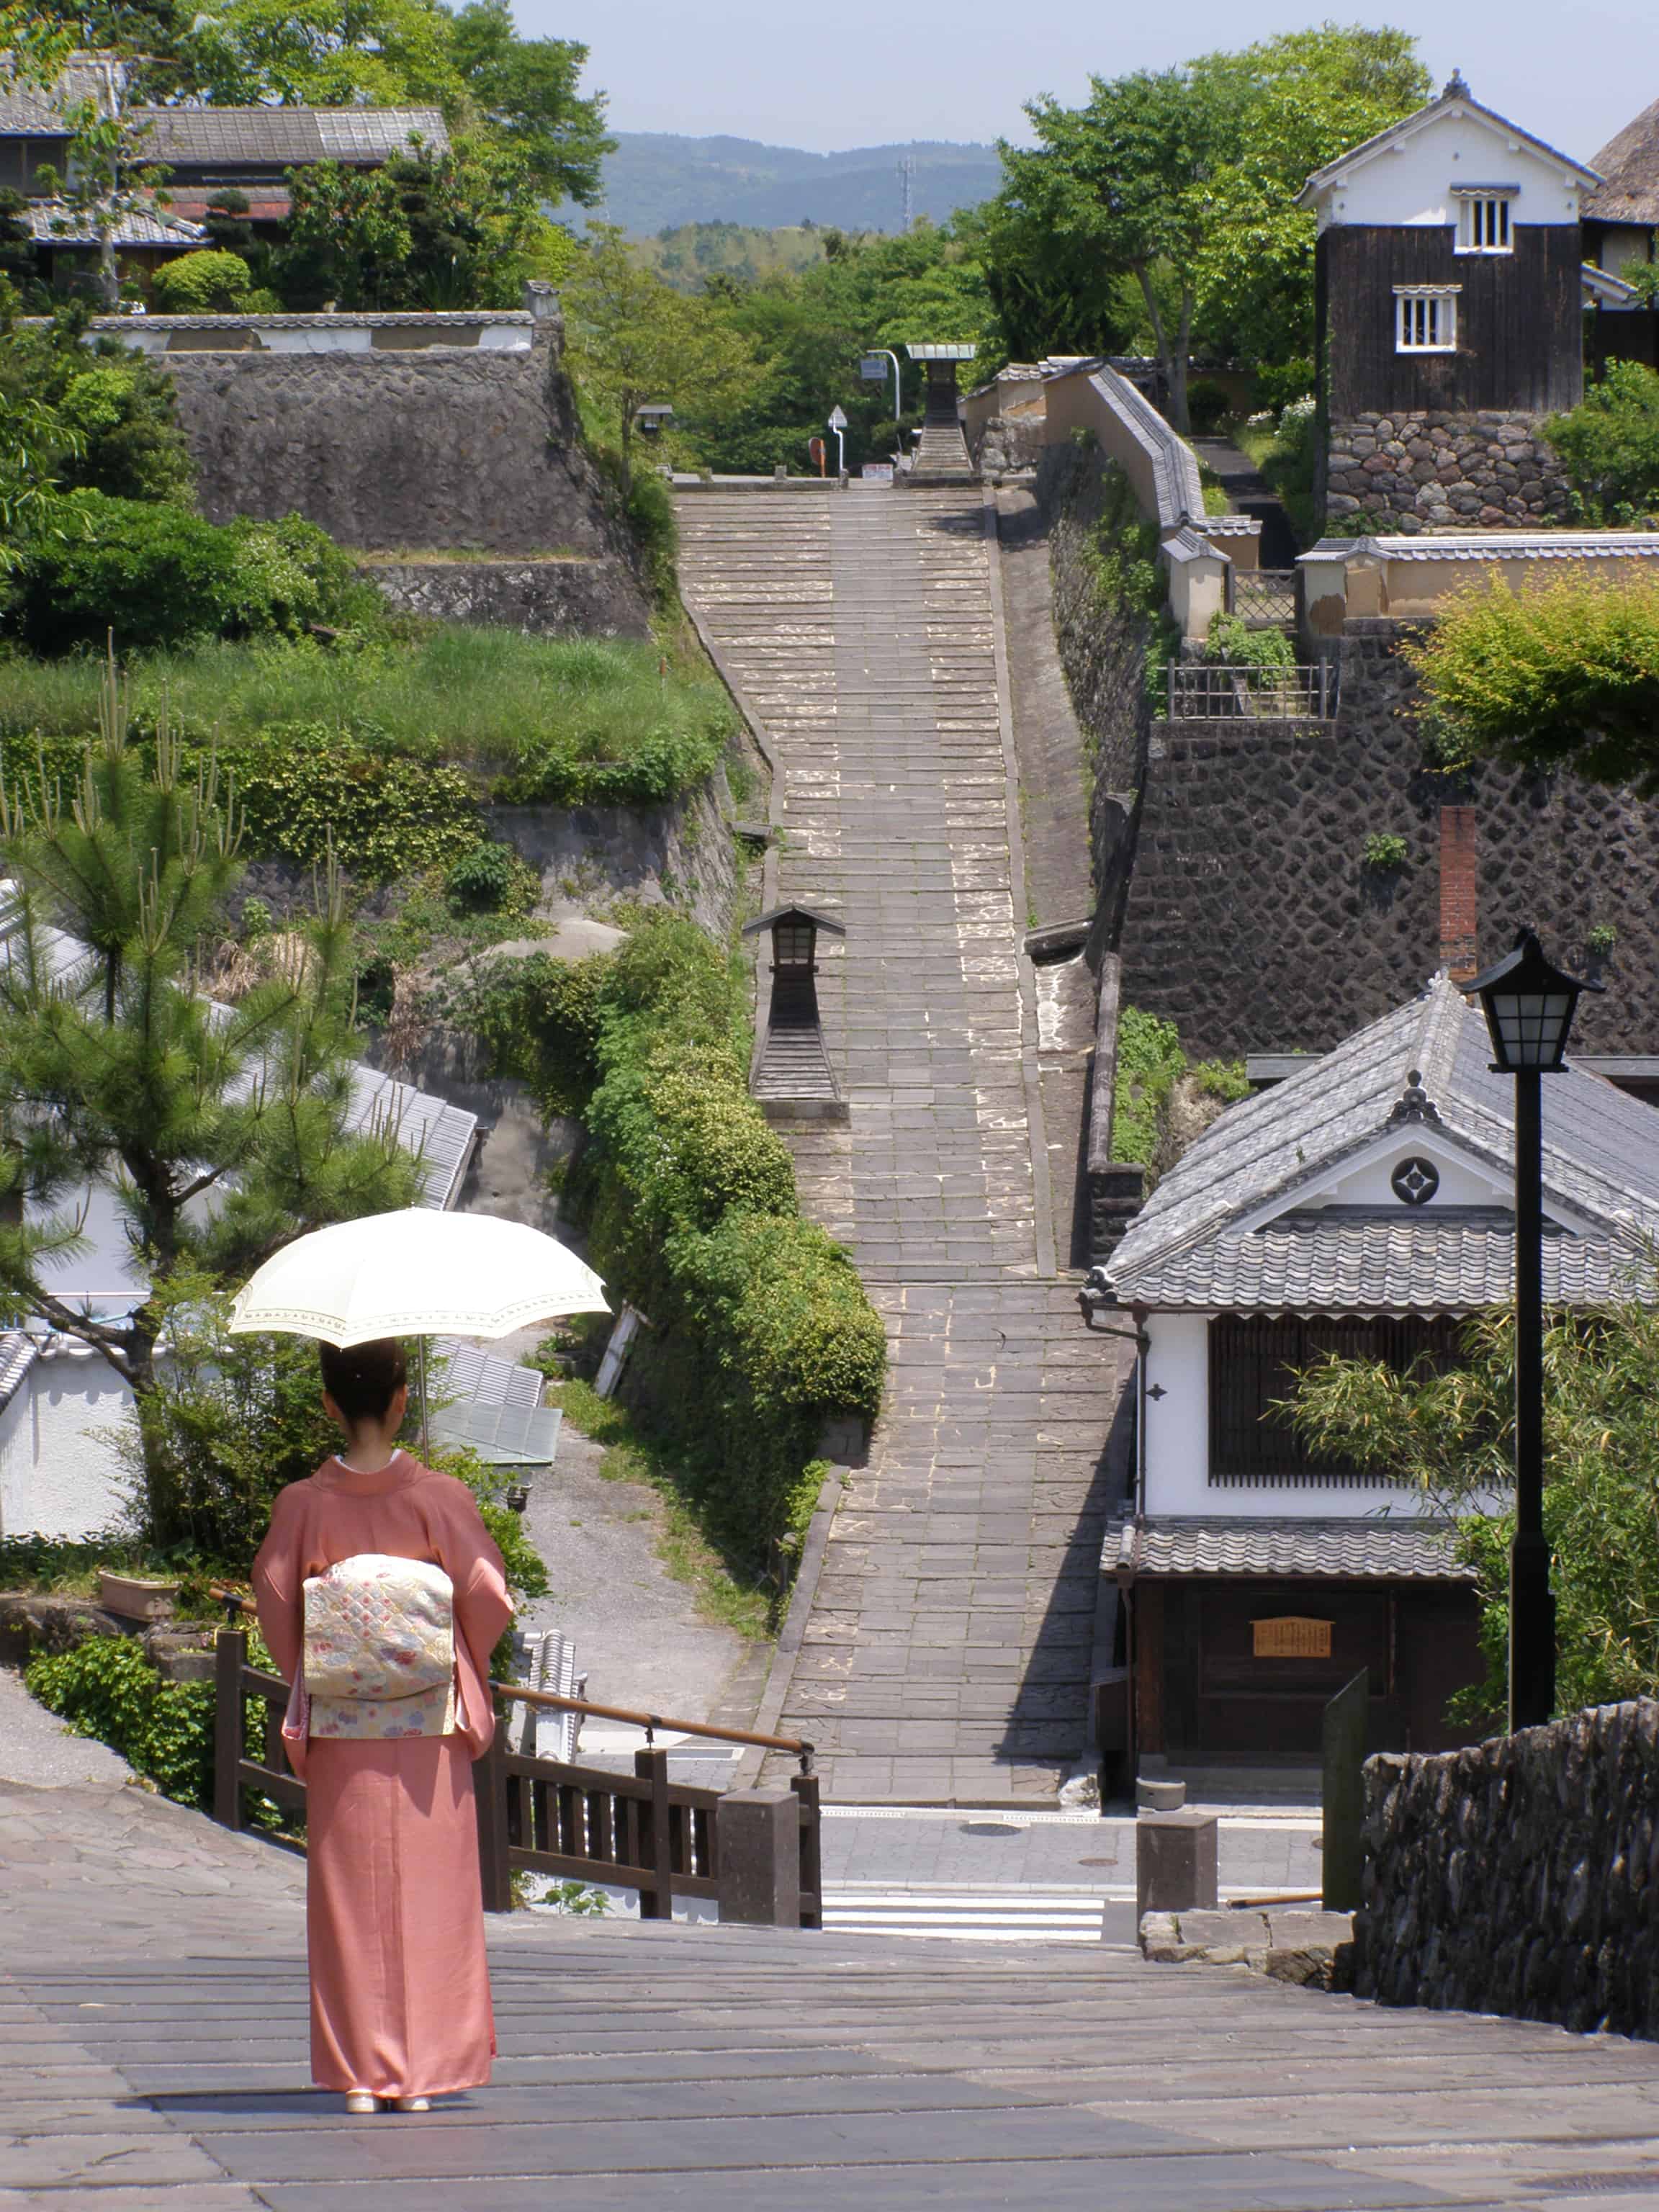 เที่ยว Kitsuki หมู่บ้านญี่ปุ่นโบราณ จังหวัดโออิตะ (Oita) 